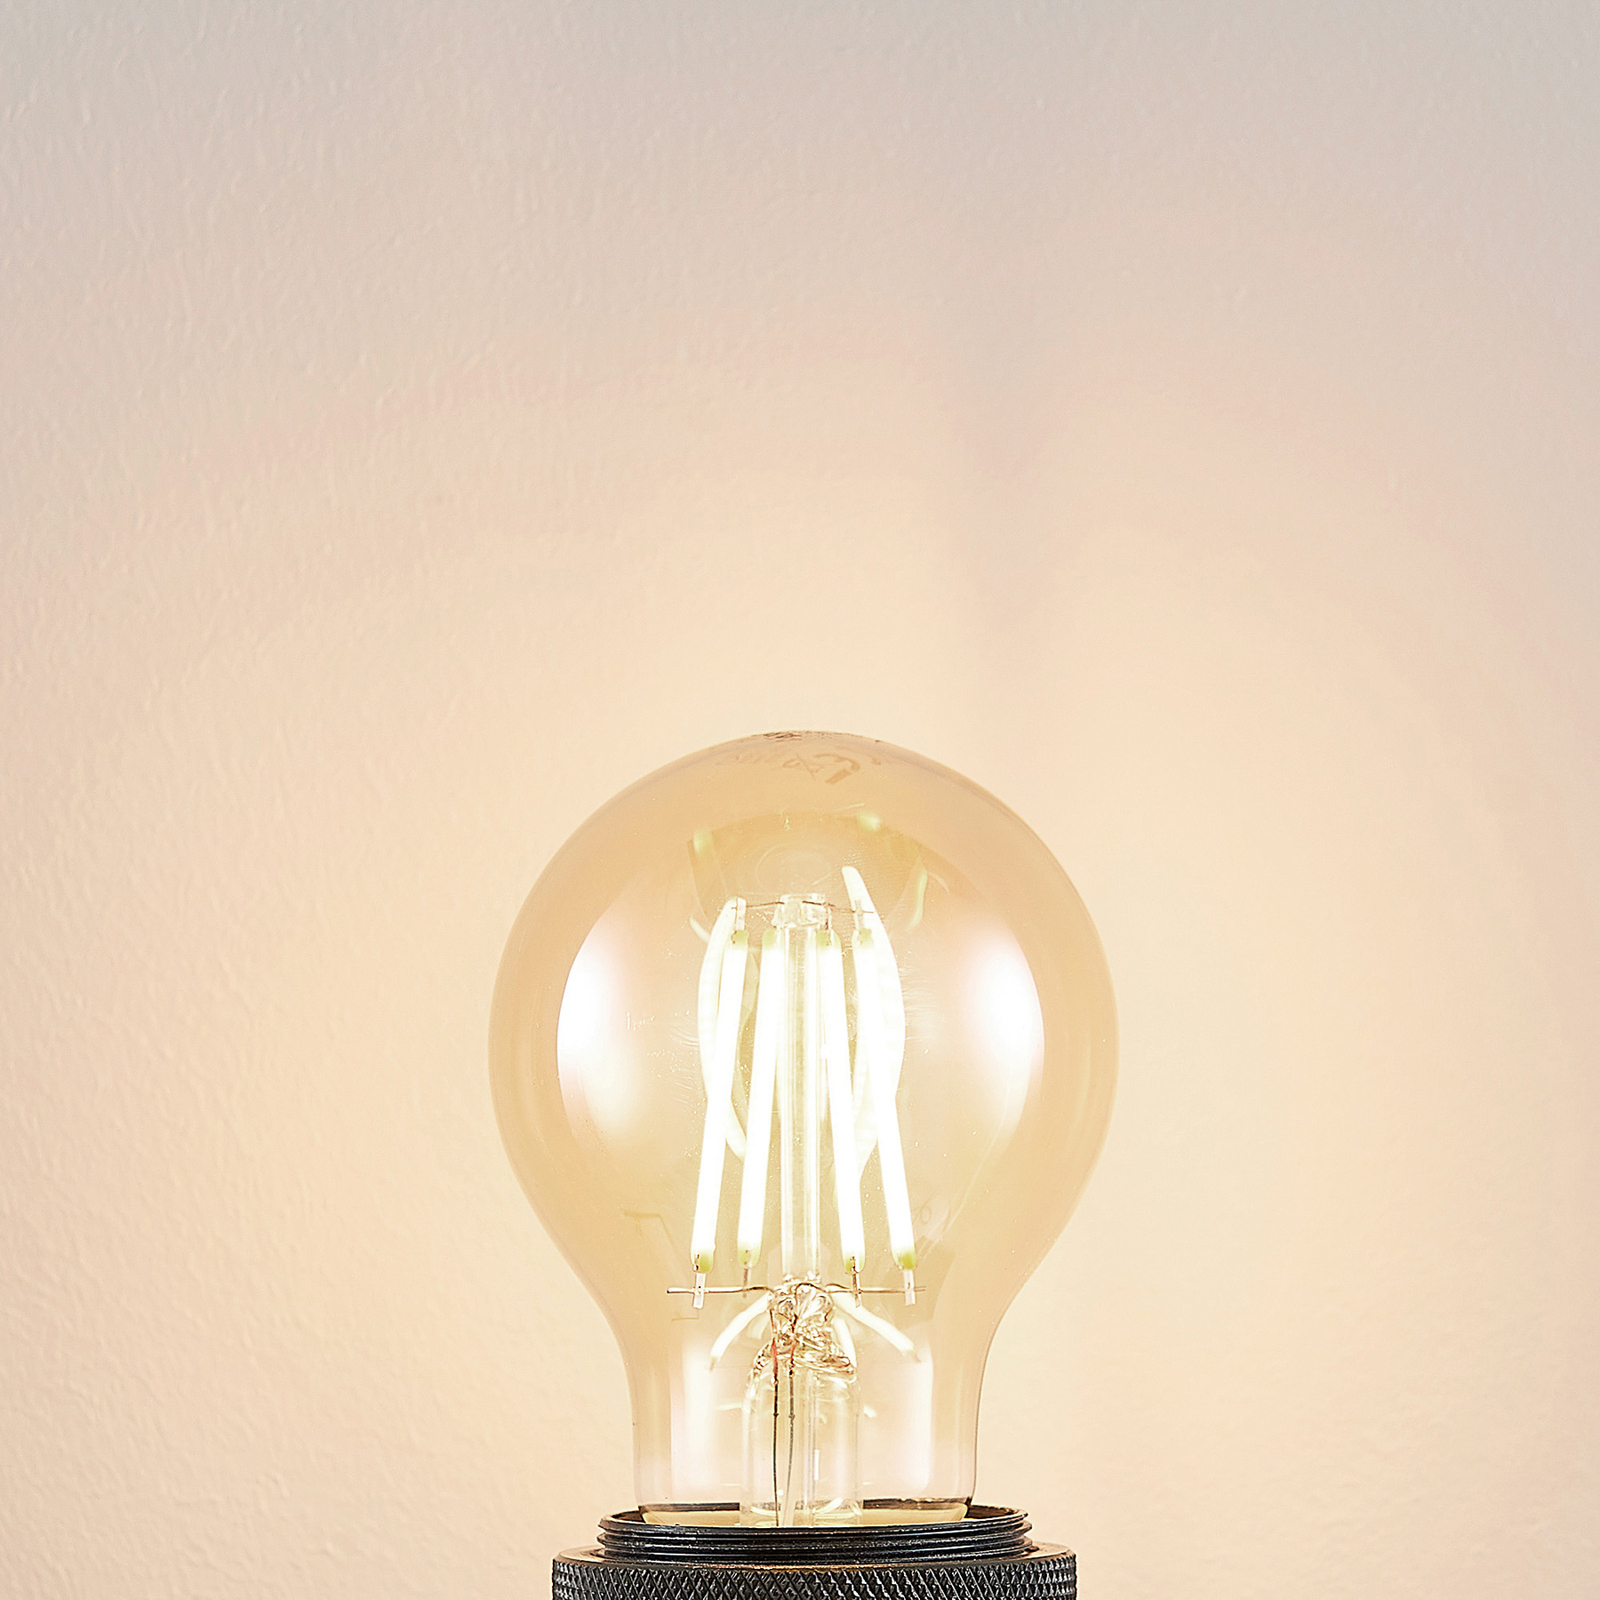 LED bulb E27 6.5W 825 amber 3-level dimmer 2-pack